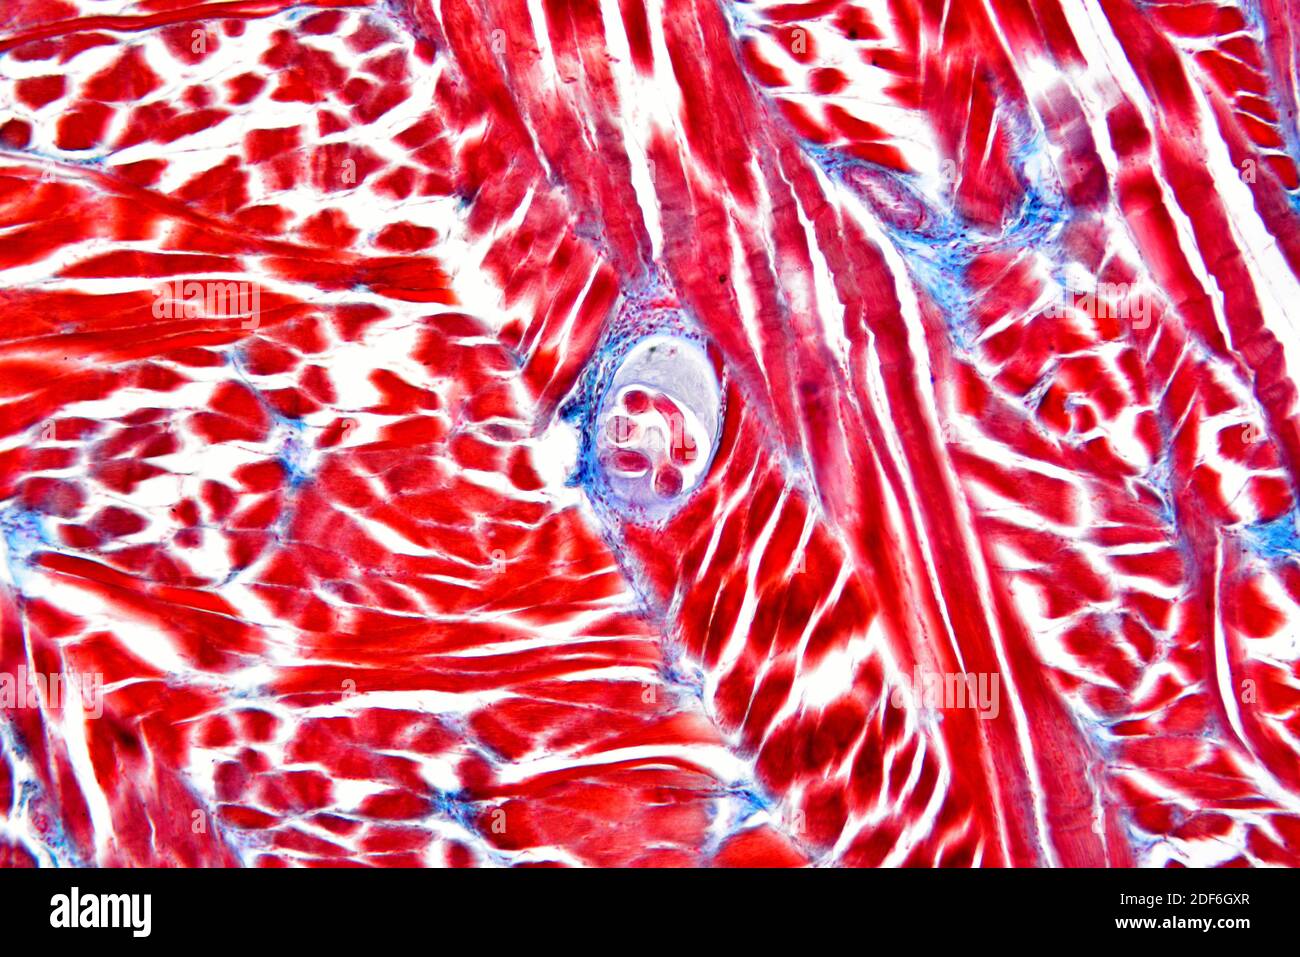 Larves de ver de porc (Trichinella spiralis) dans un tissu musculaire. Microscope optique X100. Banque D'Images